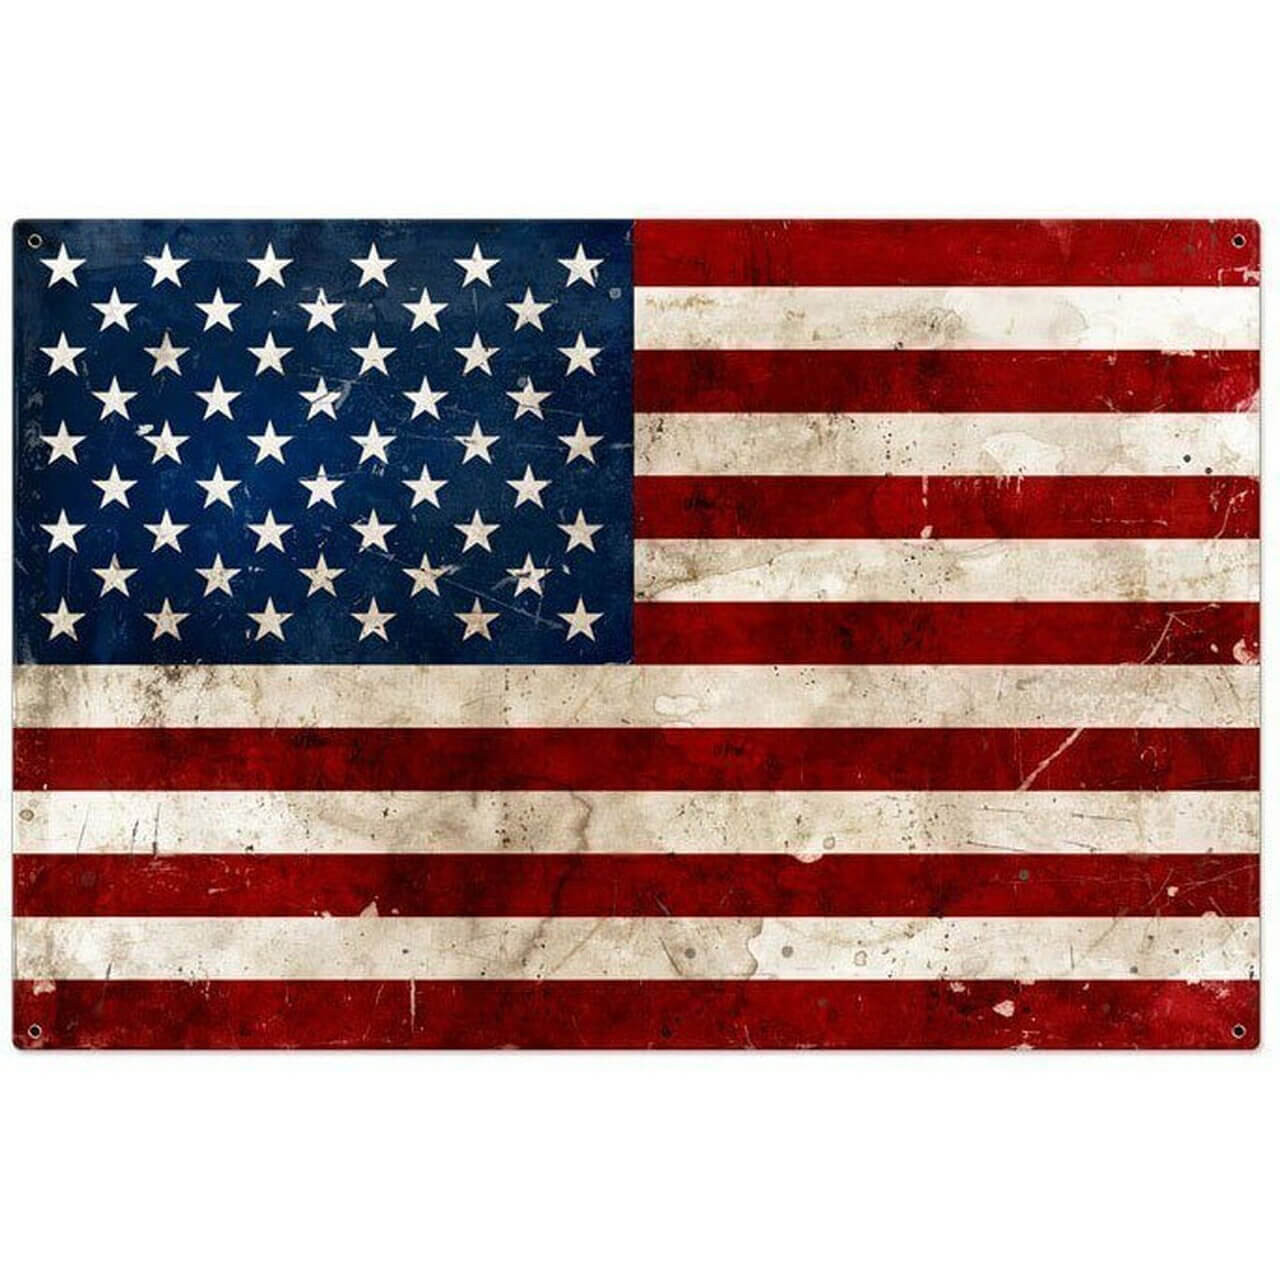 US FLAG SIGN CUSTOM METAL SIGN Durable Aluminum NO RUST FULL COLOR FUS#539 